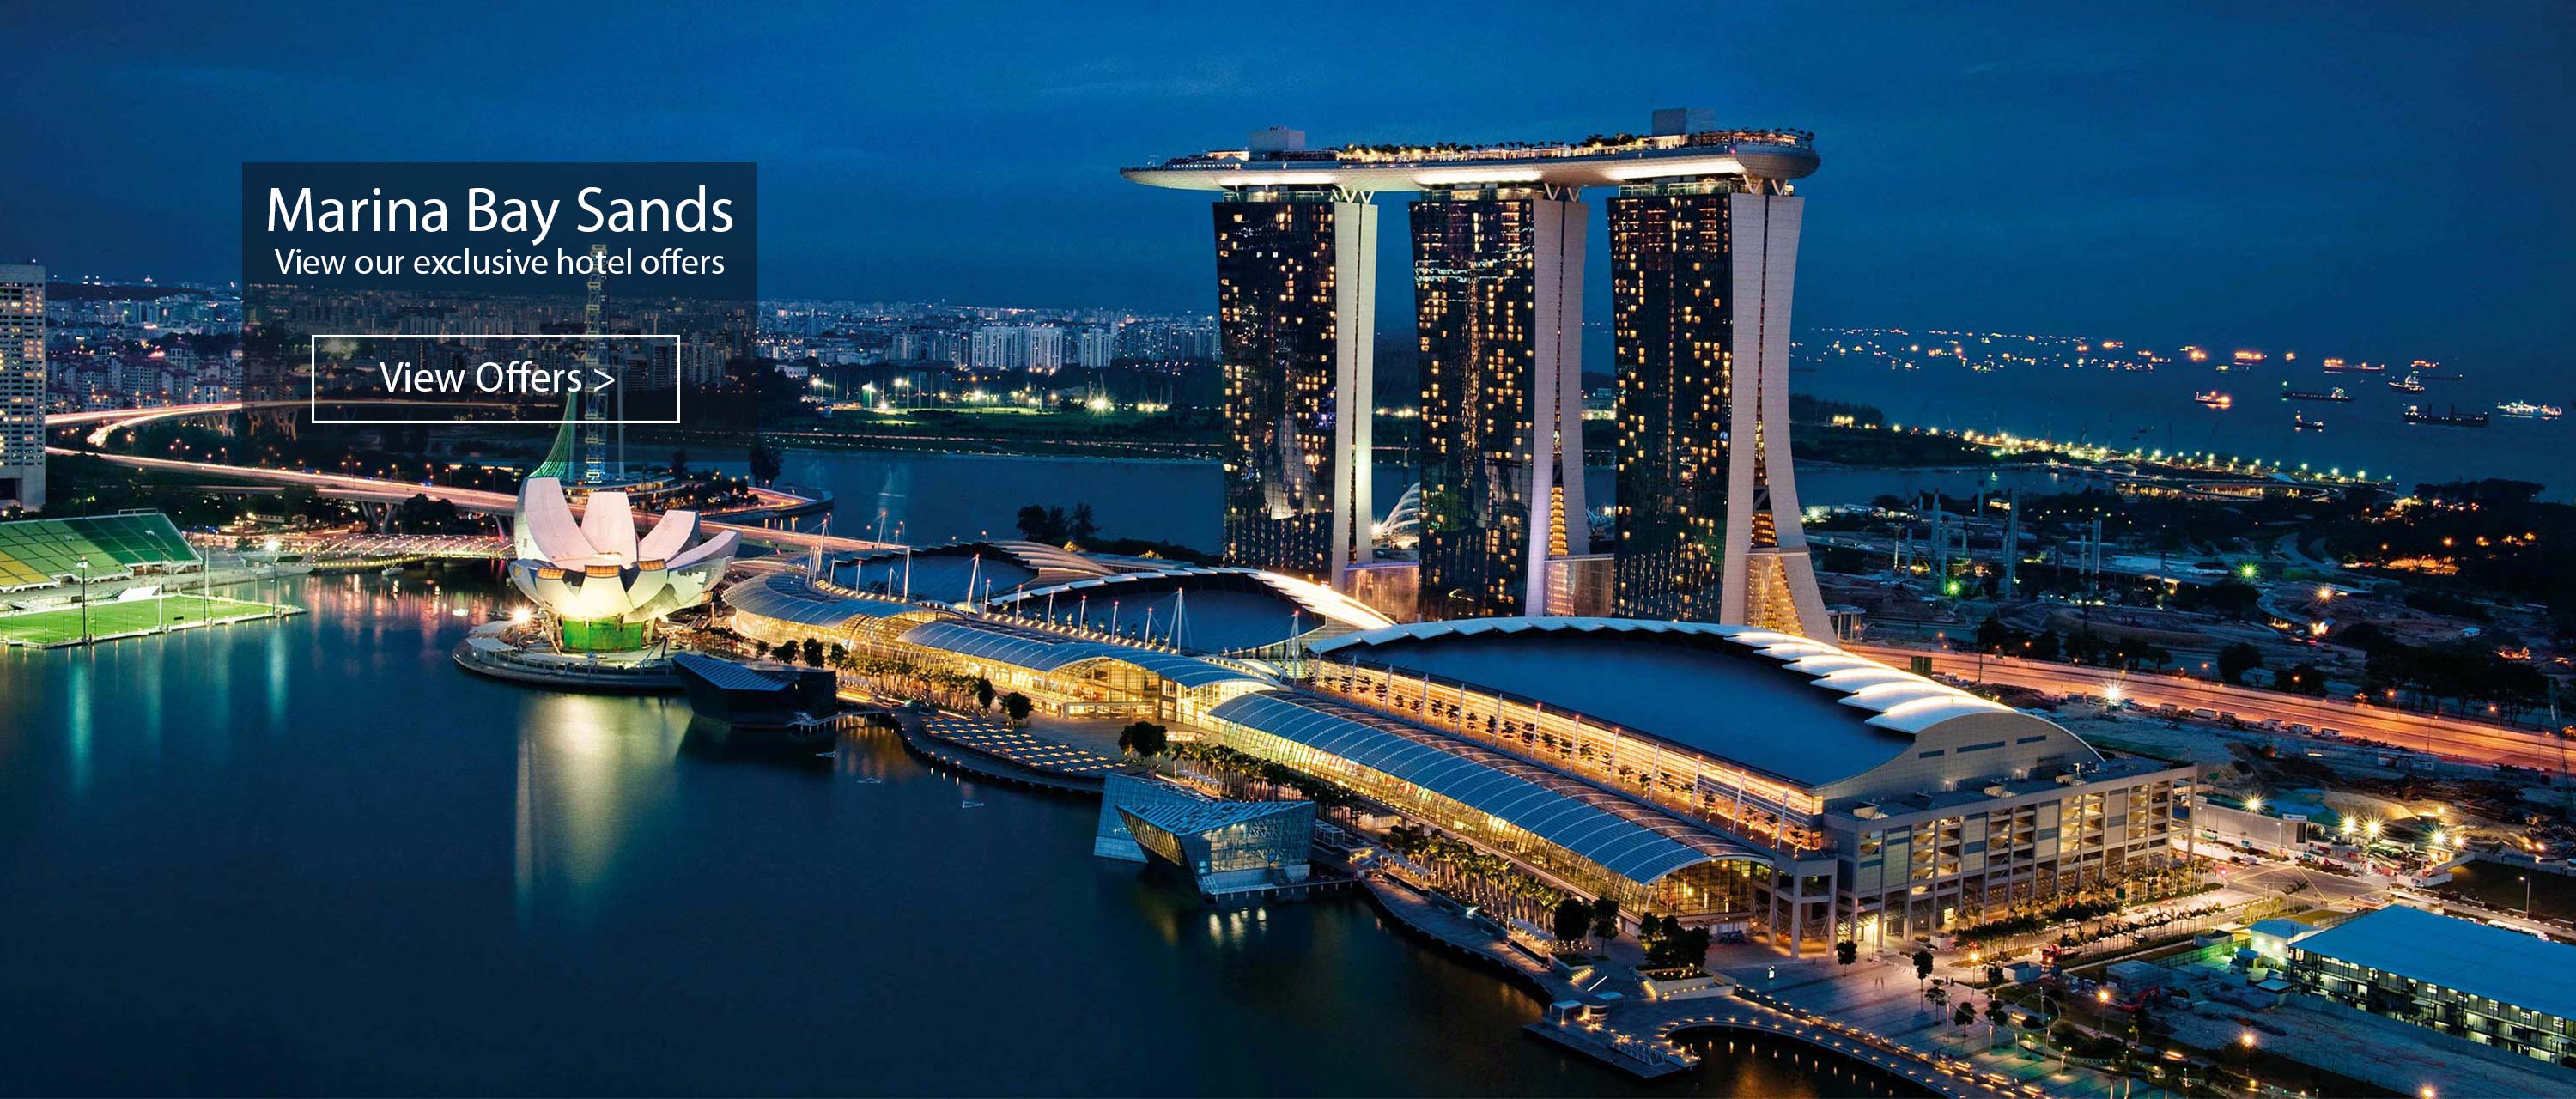 マリーナベイサンズMarina Bay Sands ：シンガポールを代表するホテル - 公式サイト